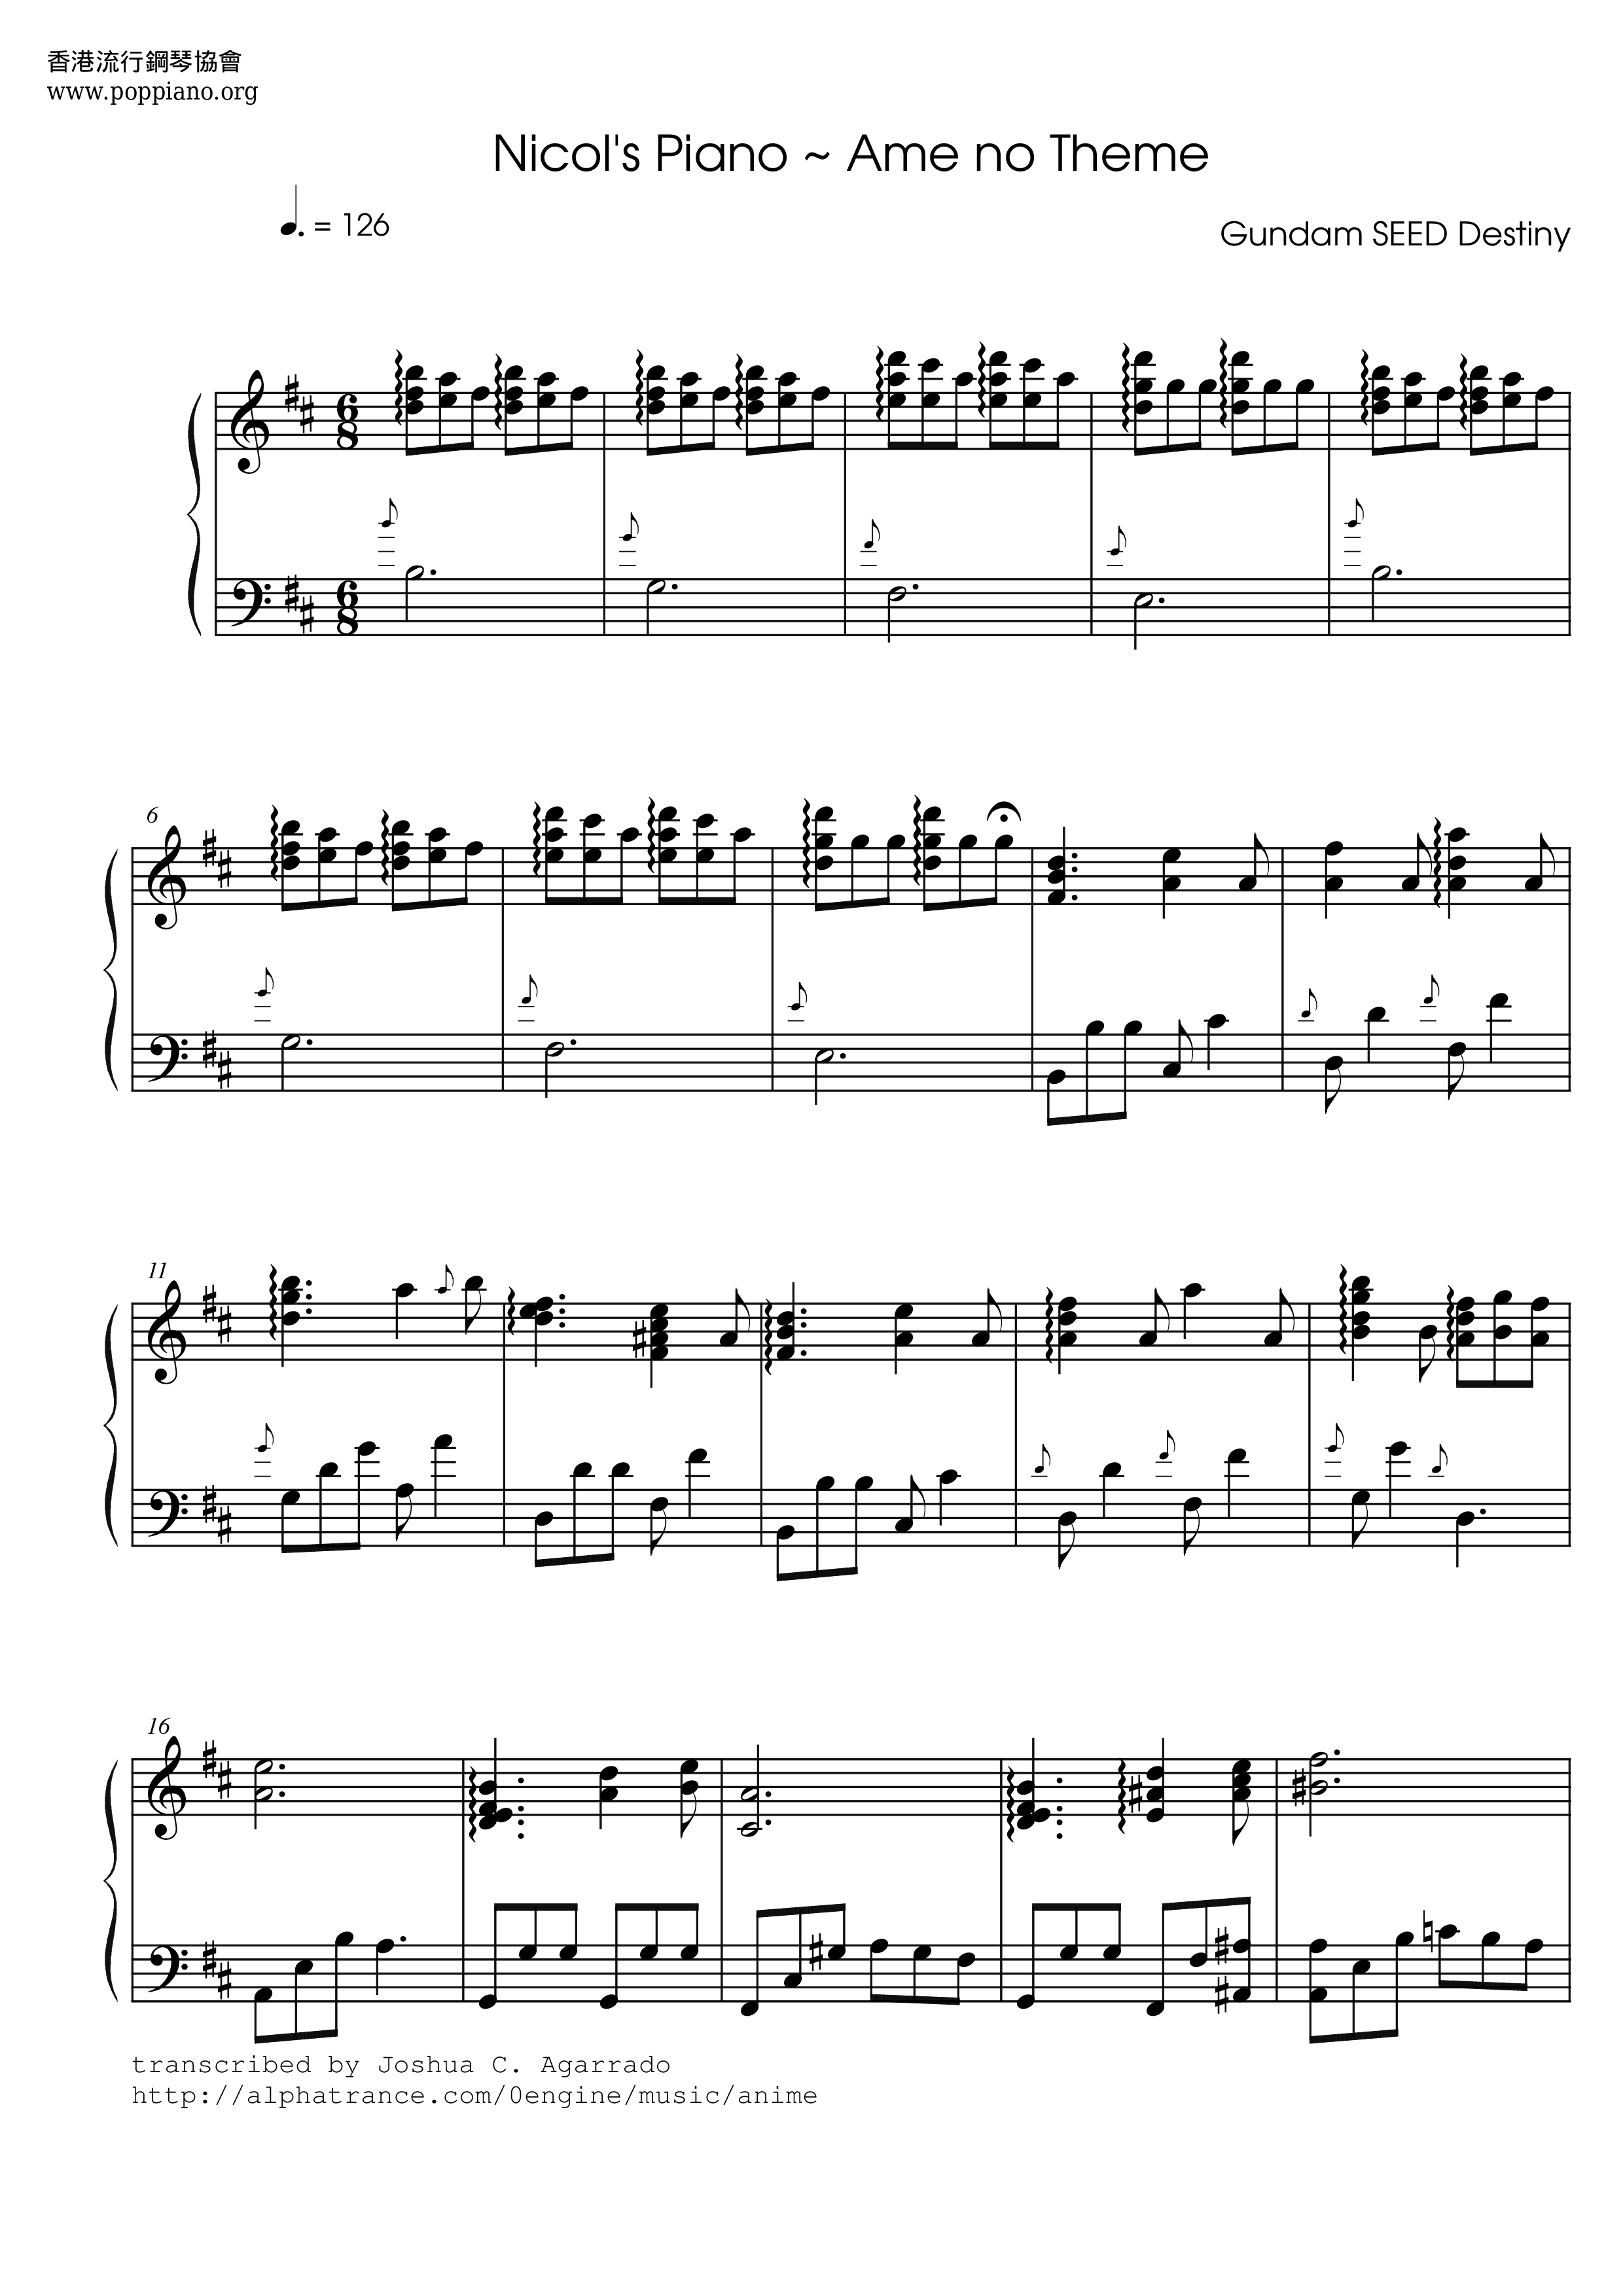 Nocol's Piano - Ame no Theme Score